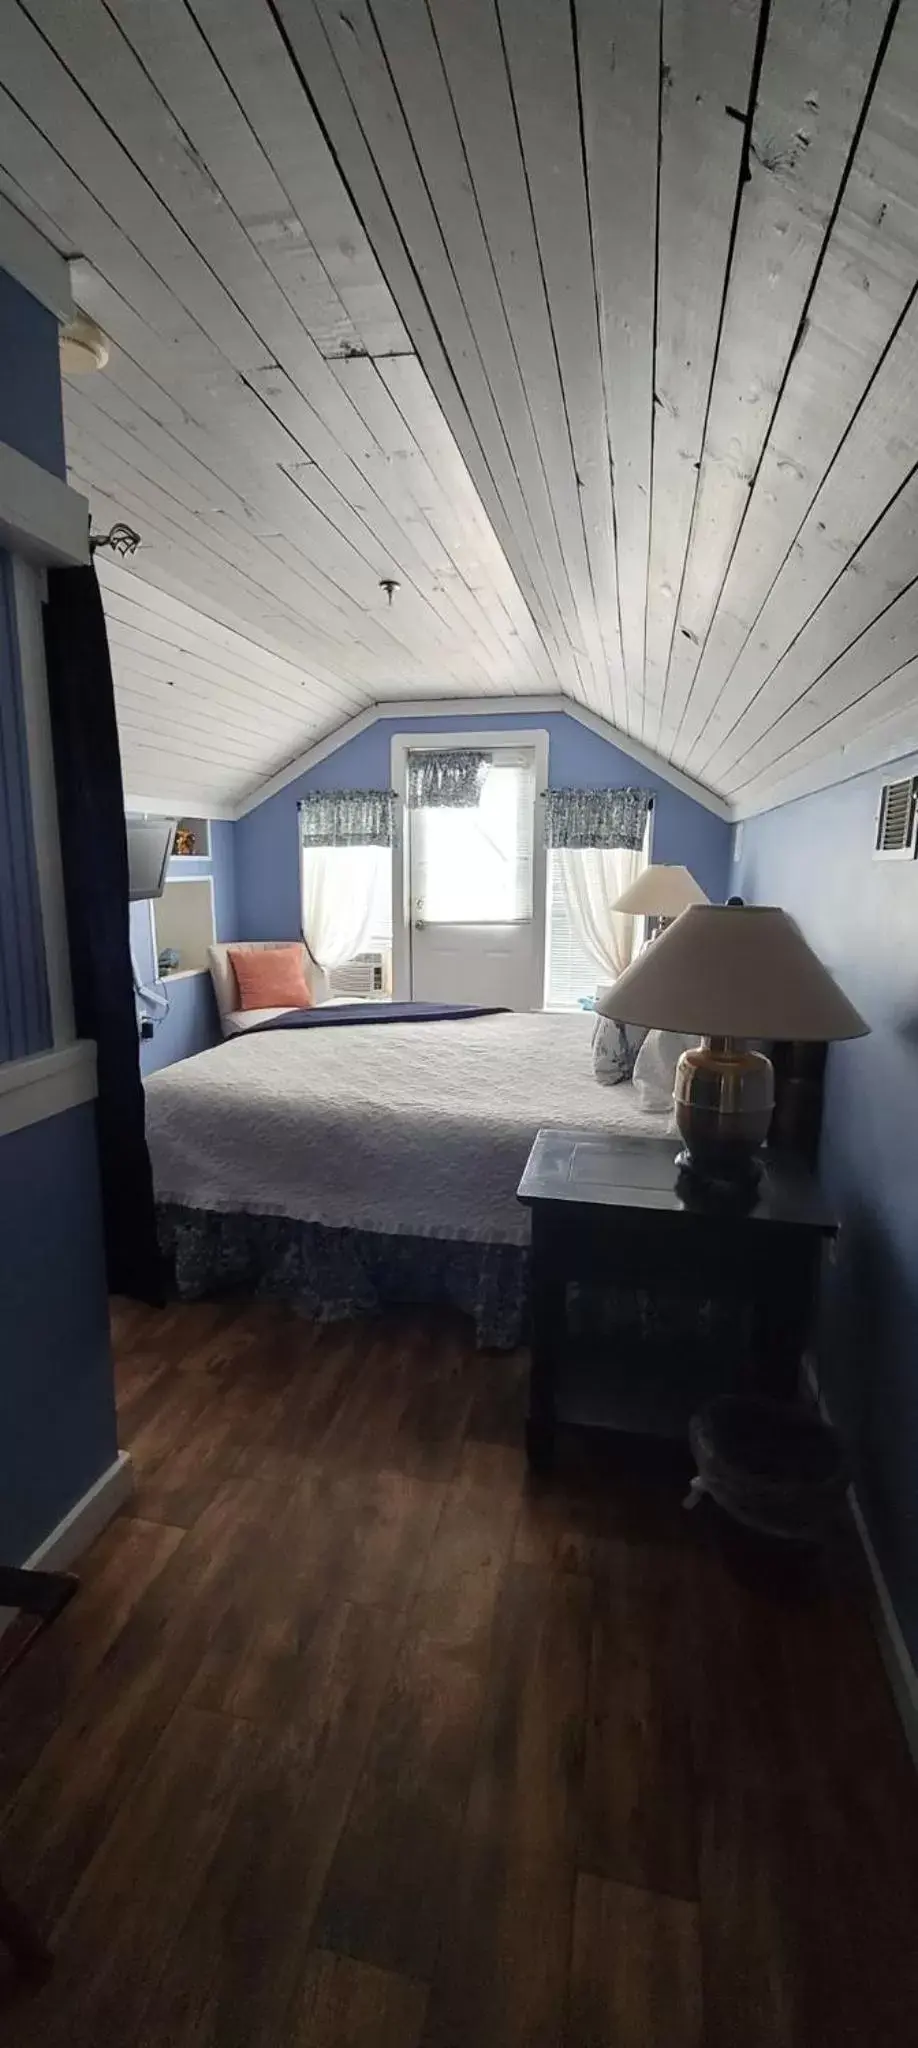 Bed in Tybee Island Inn Bed & Breakfast